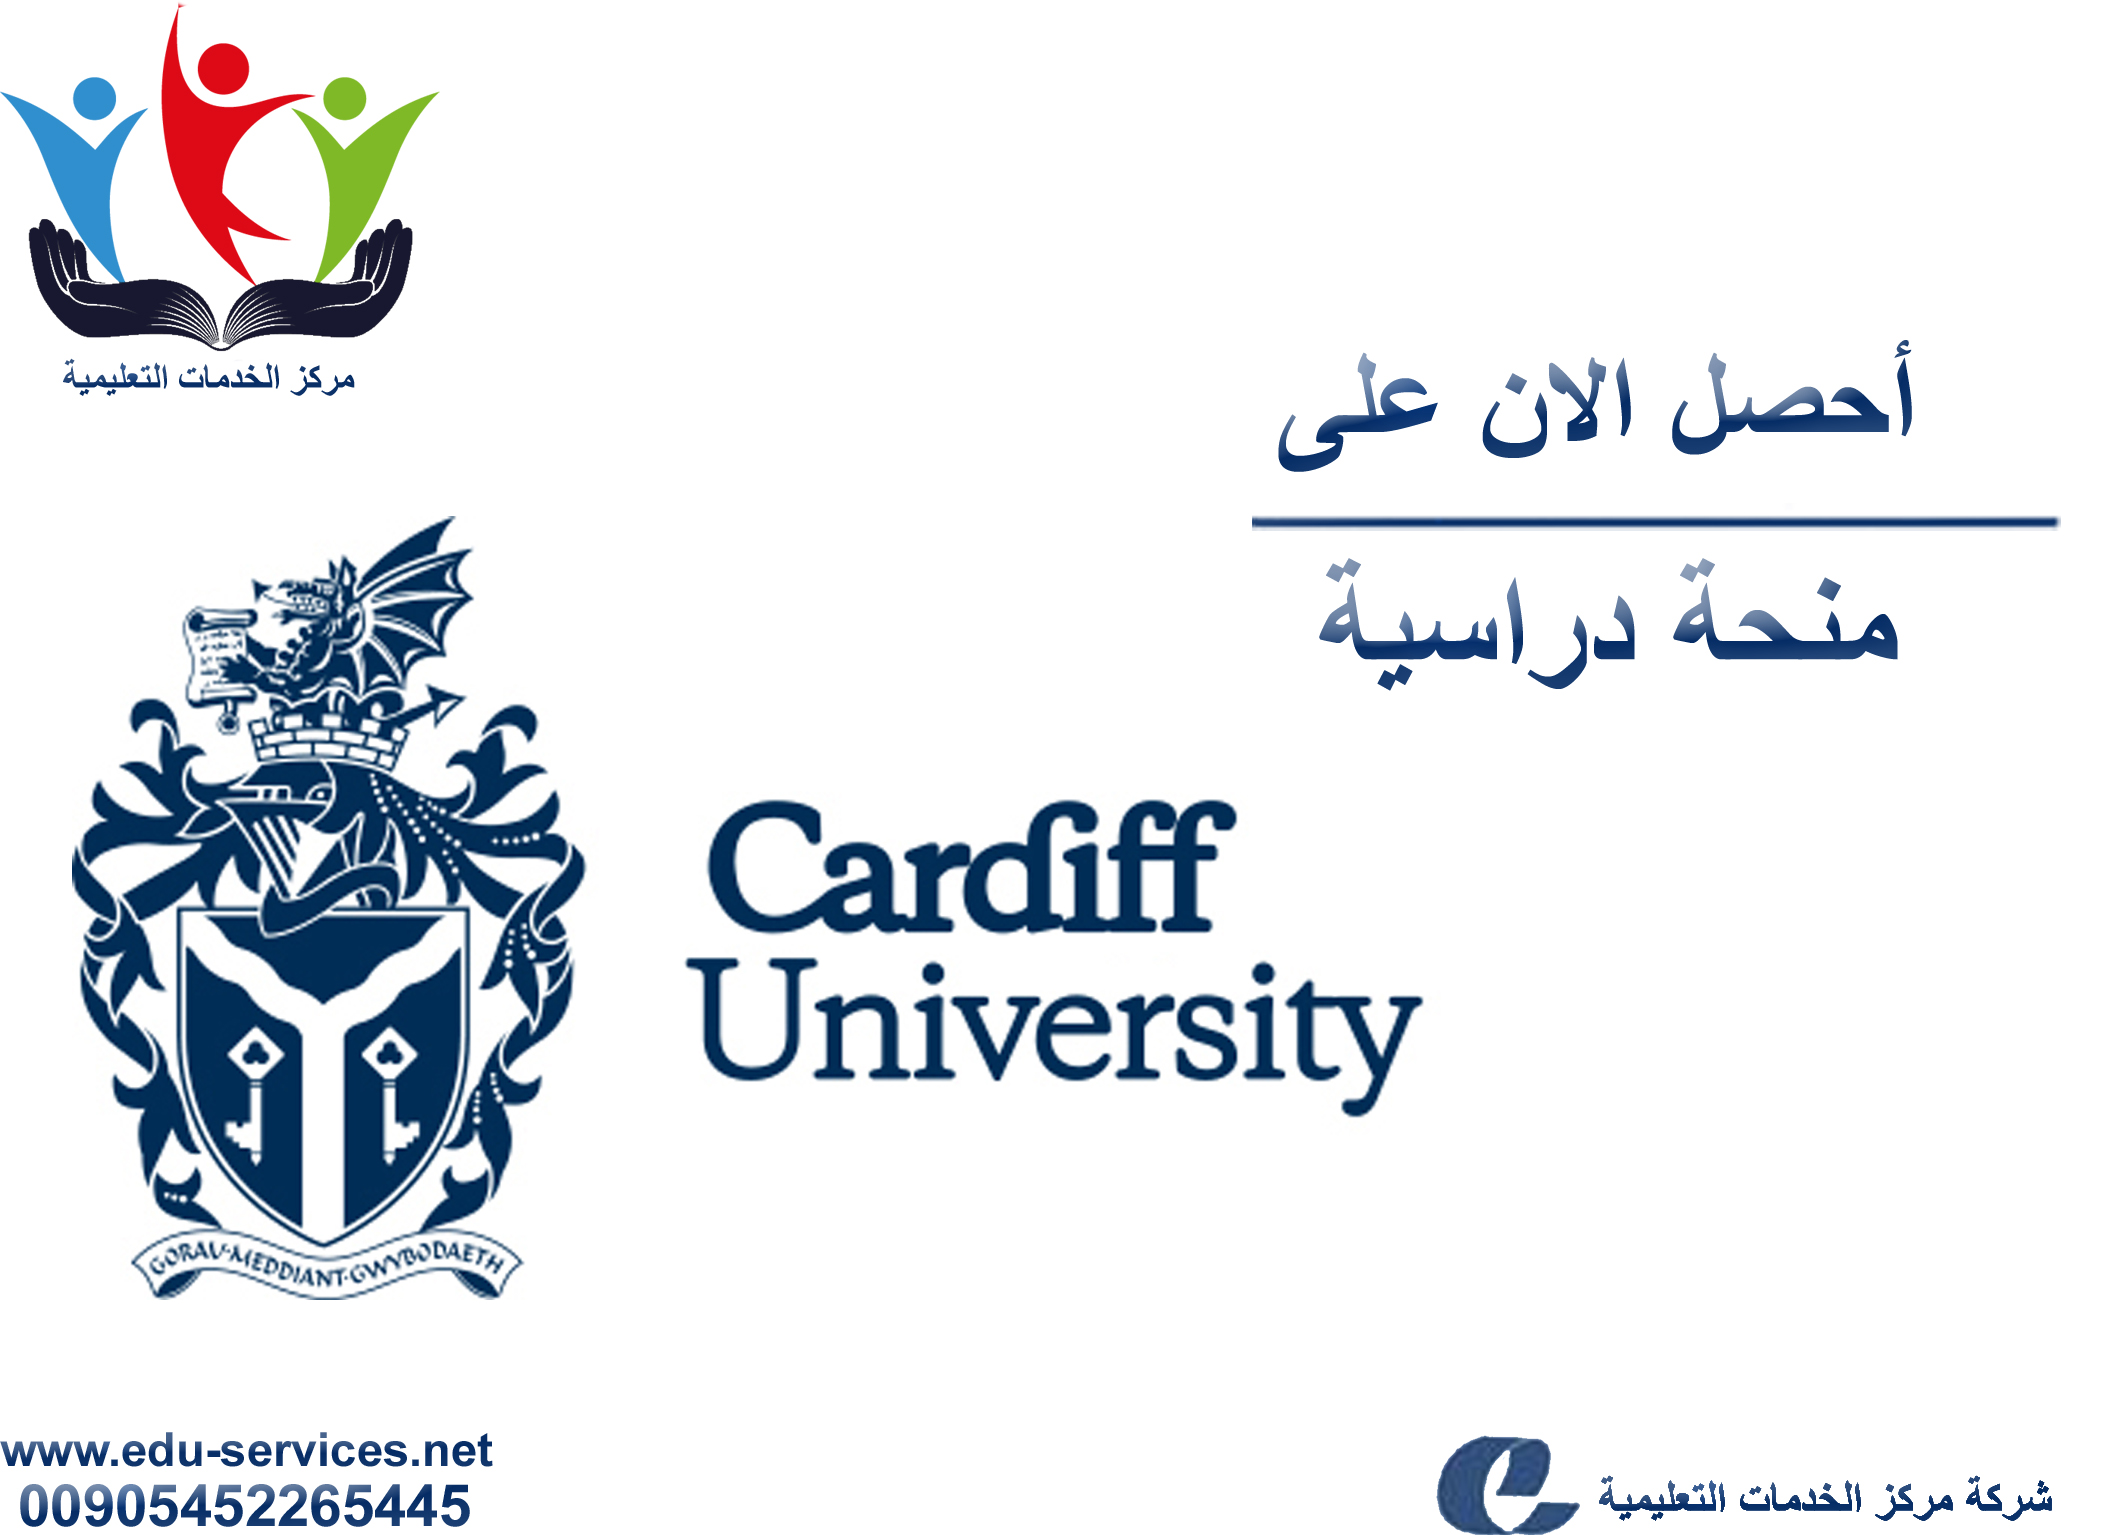 منح دراسية لدرجة الدراسات العليا من جامعة Cardiff فى المملكة المتحدة للعام 2018-2019